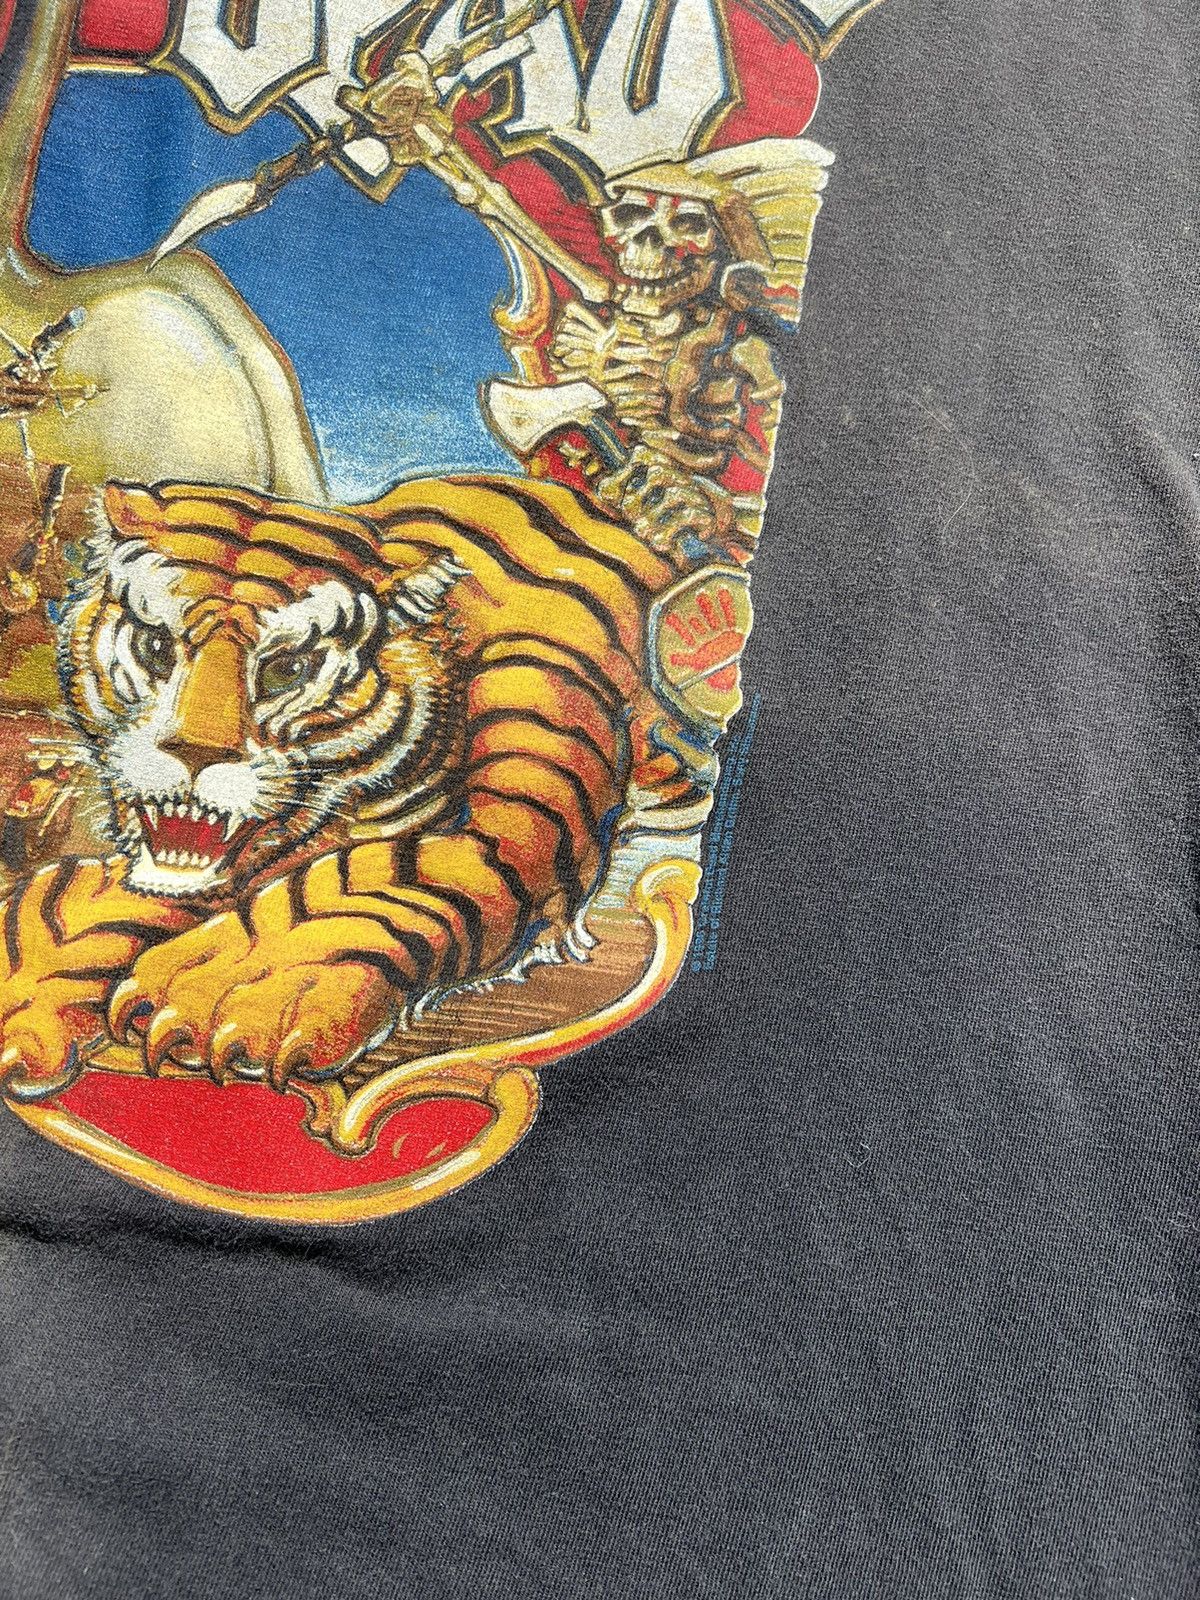 Vintage Vintage Grateful Dead 1996 Circus Cronies T-shirt XL Size US XL / EU 56 / 4 - 3 Thumbnail